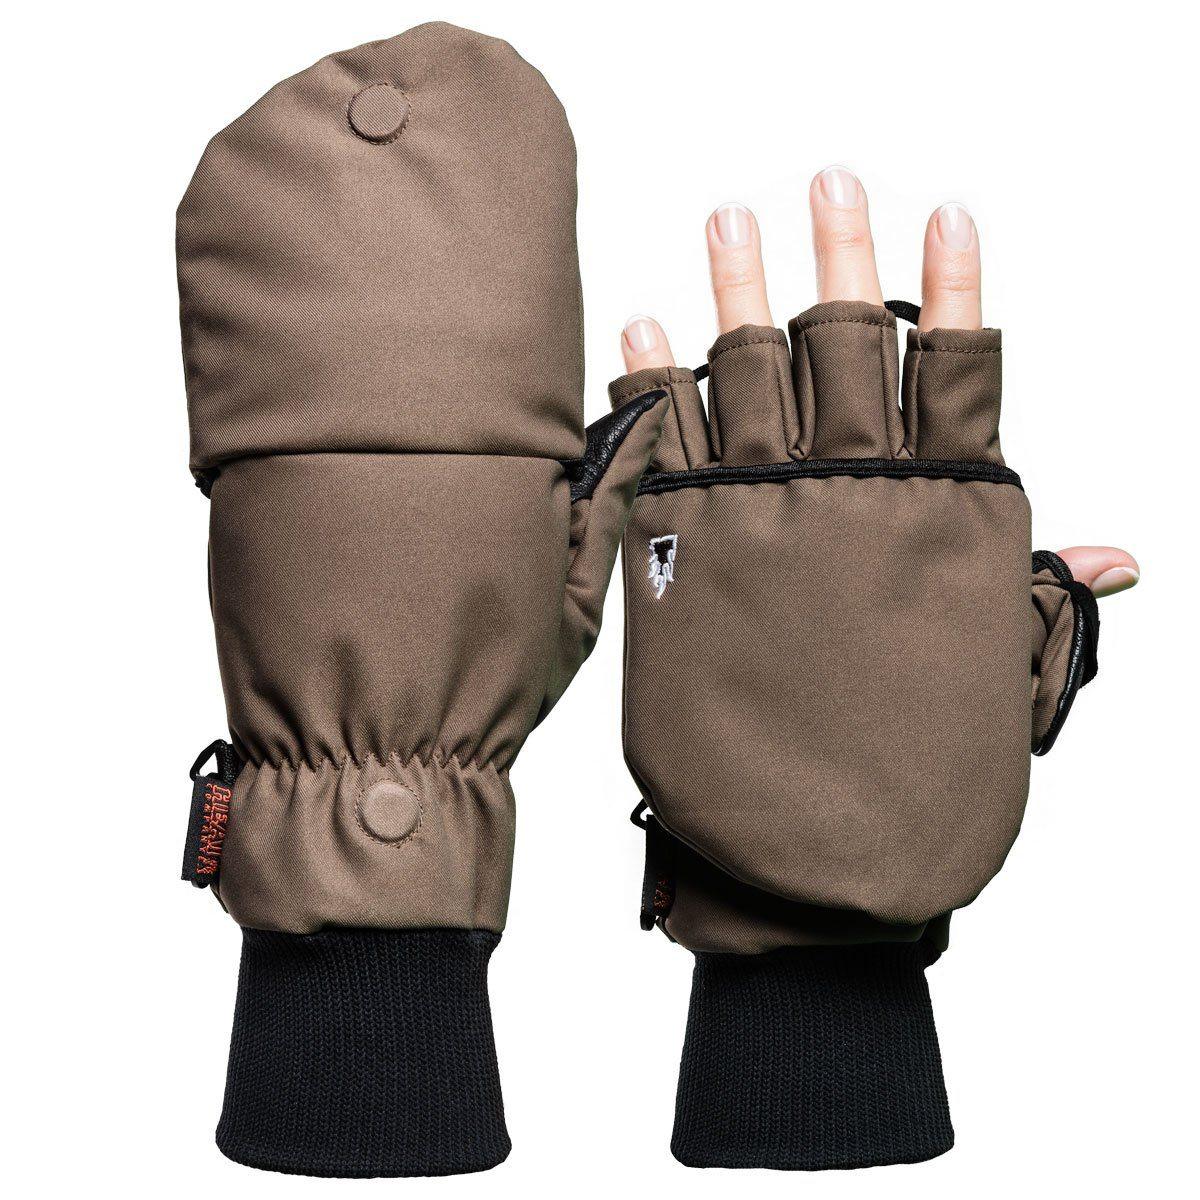 The Heat Company Heat 2 Softshell (Handskar) från The Heat Company. Tarmac7 | TacNGear - Utrustning för polis och militär och outdoor.